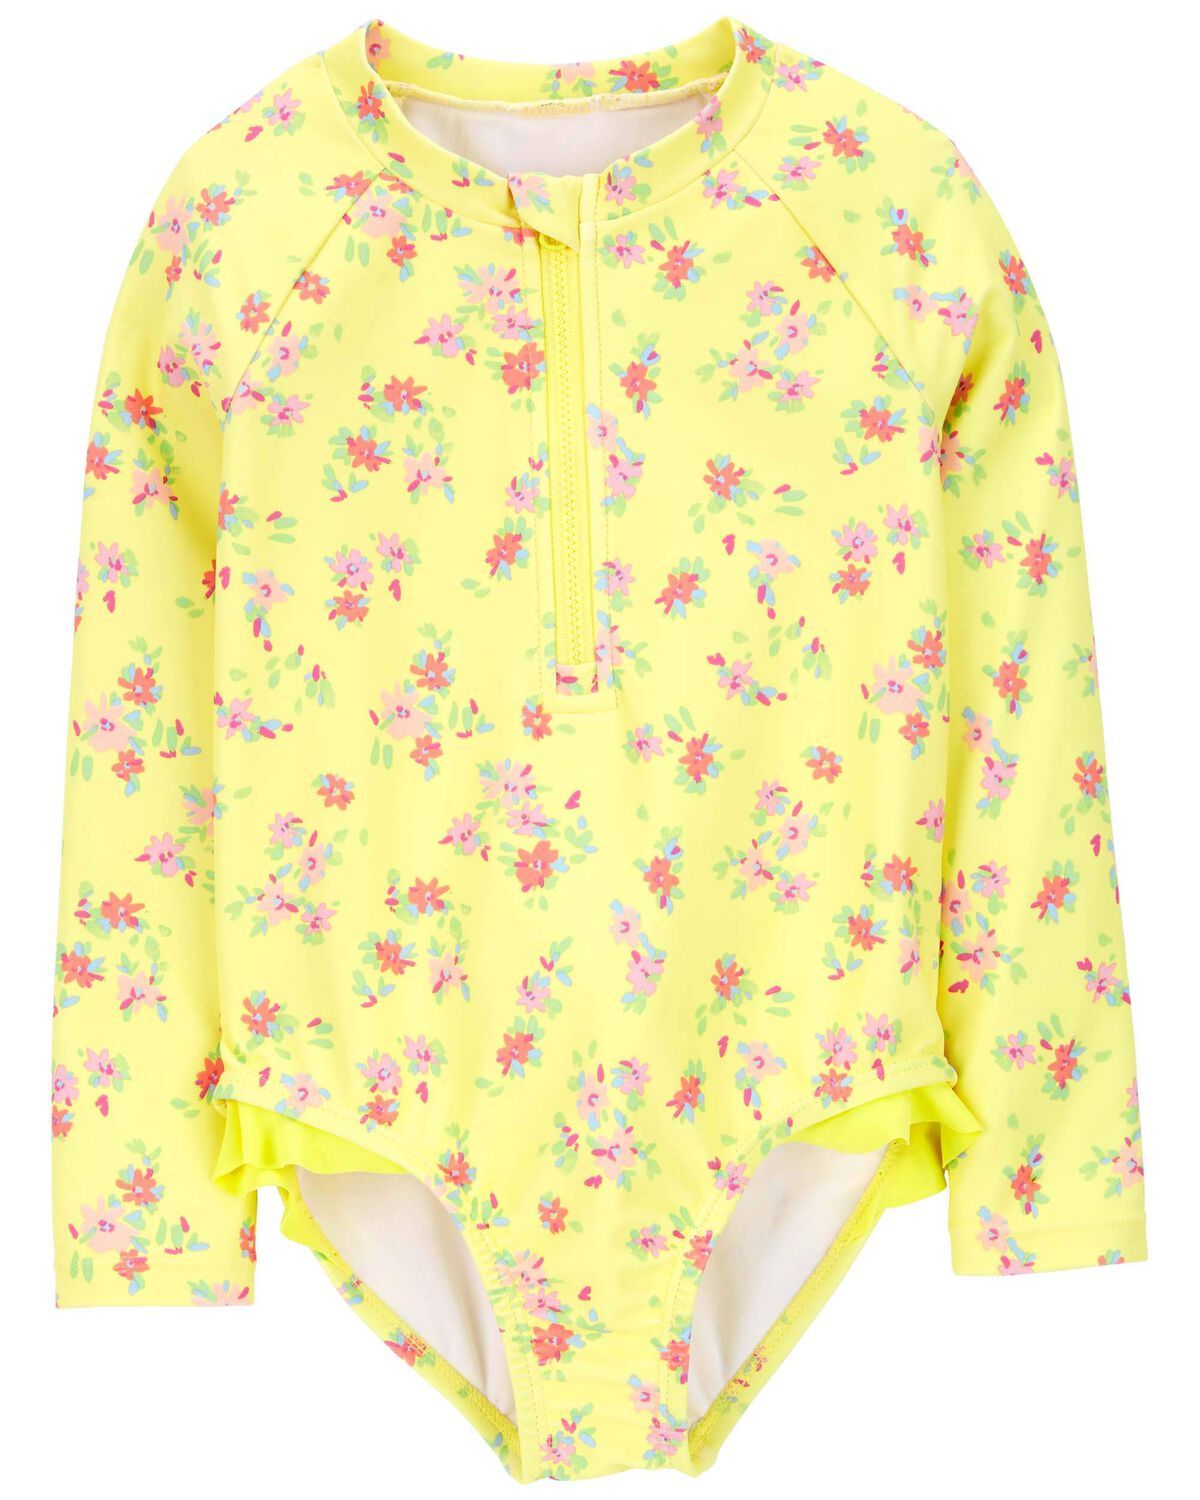 Toddler Floral Print 1-Piece Rashguard Swimsuit | Carter's